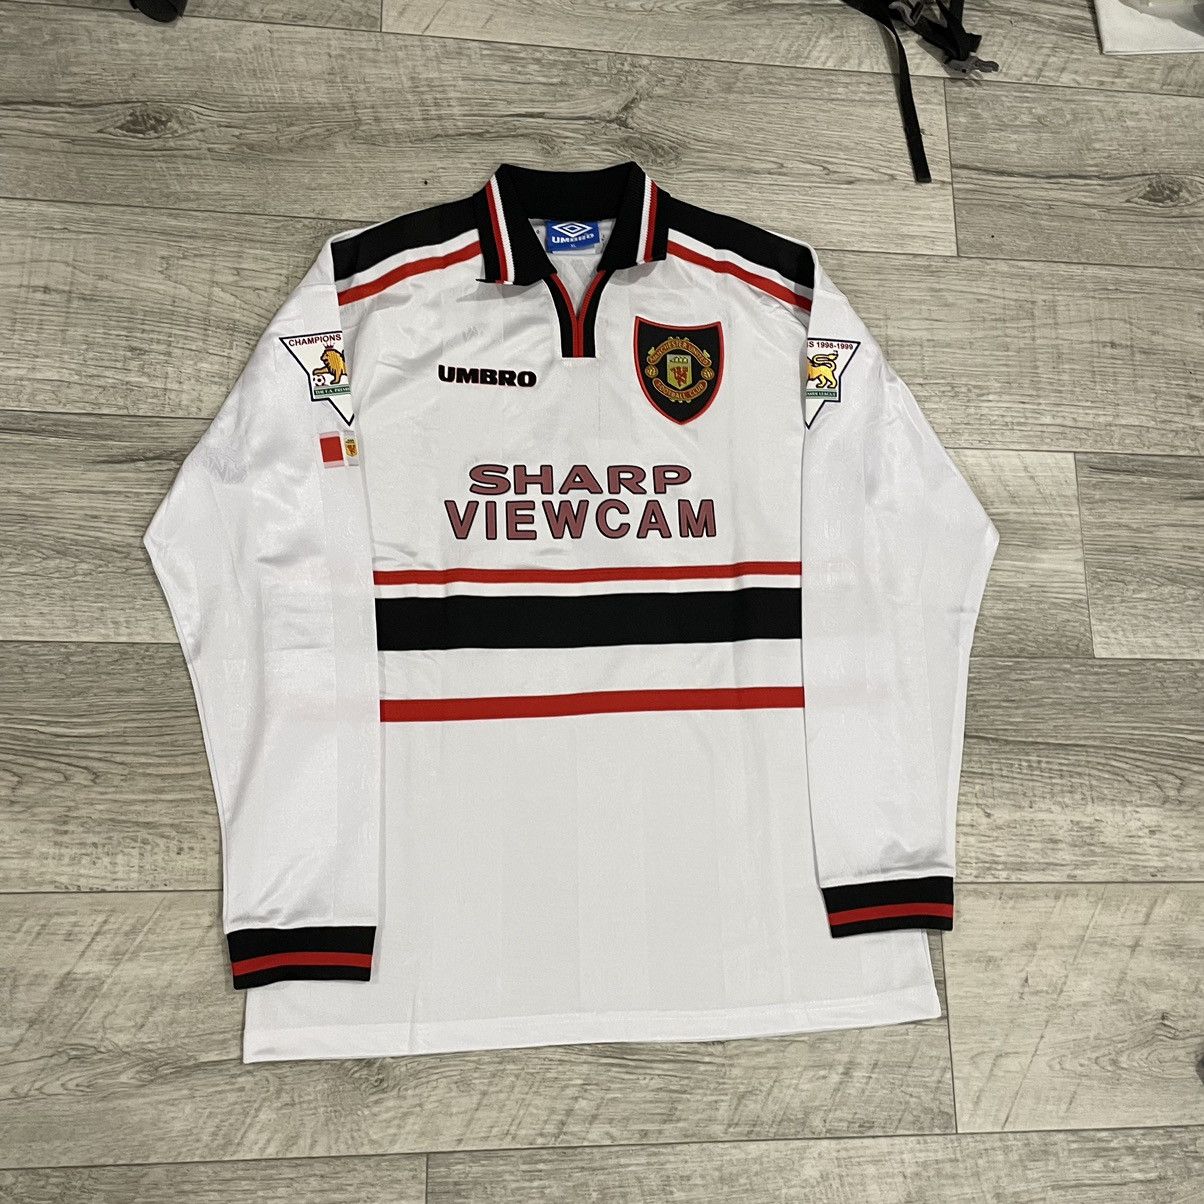 Umbro Rare 90s Umbro Manchester United Sharp Viewcam shirt jersey ...